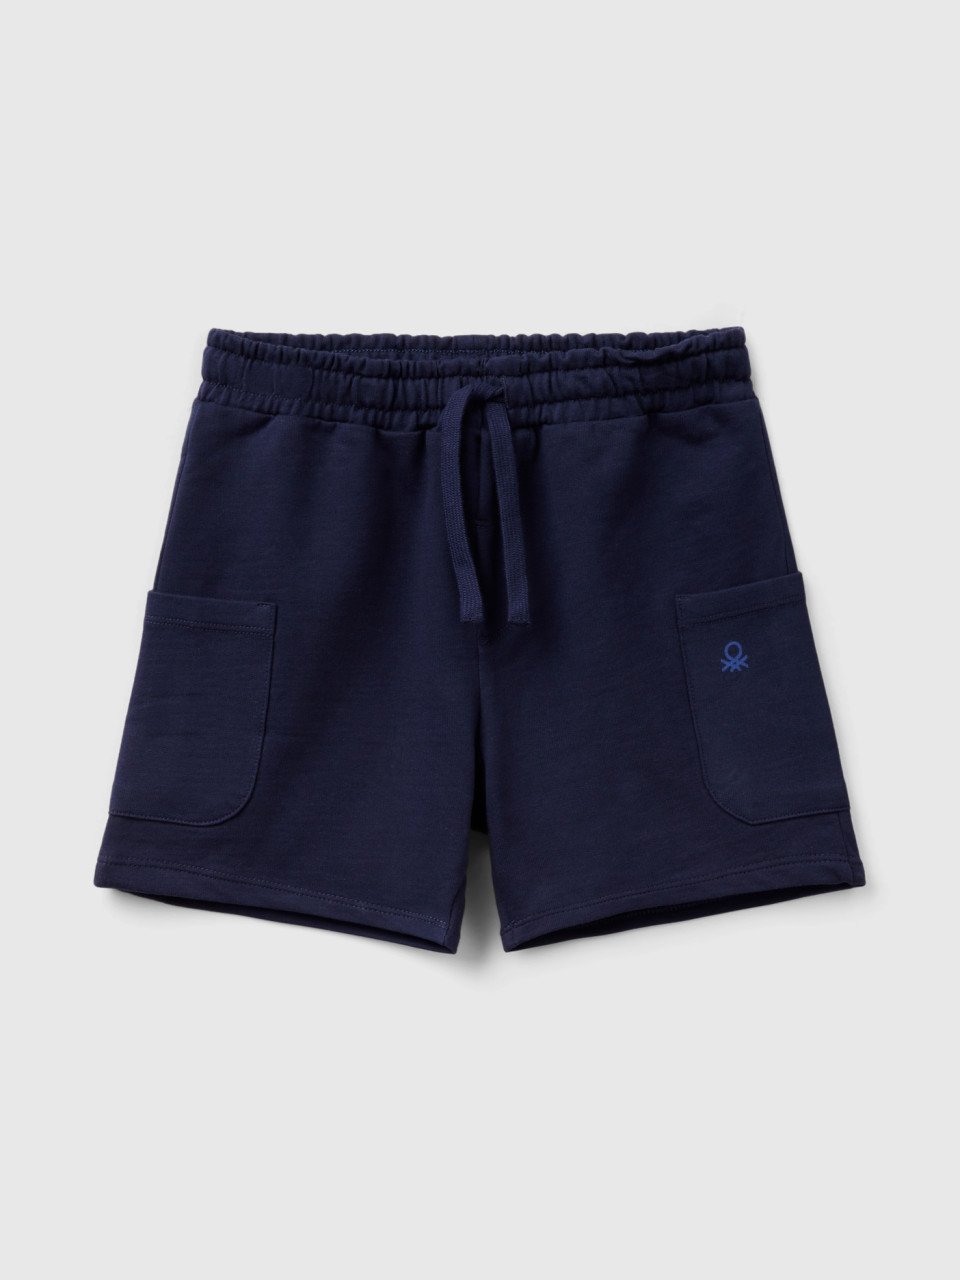 Benetton, Cargo Shorts In Organic Cotton, Dark Blue, Kids